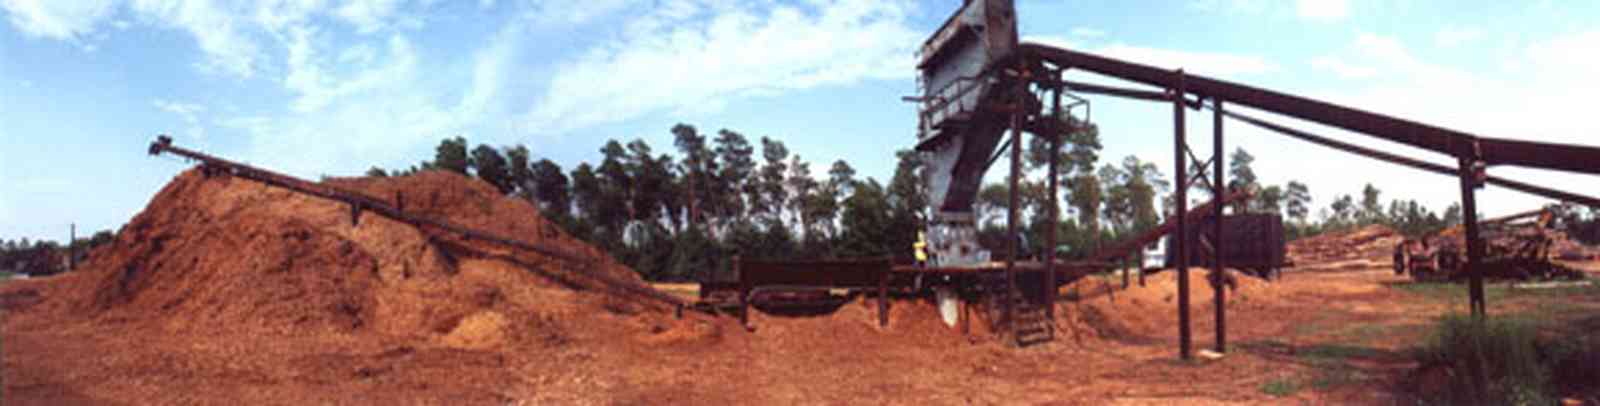 Harold:-Wilson-Lumber-Mill_1.jpg:  sawdust, conveyor belt, stack, lumber, cyprus lumber